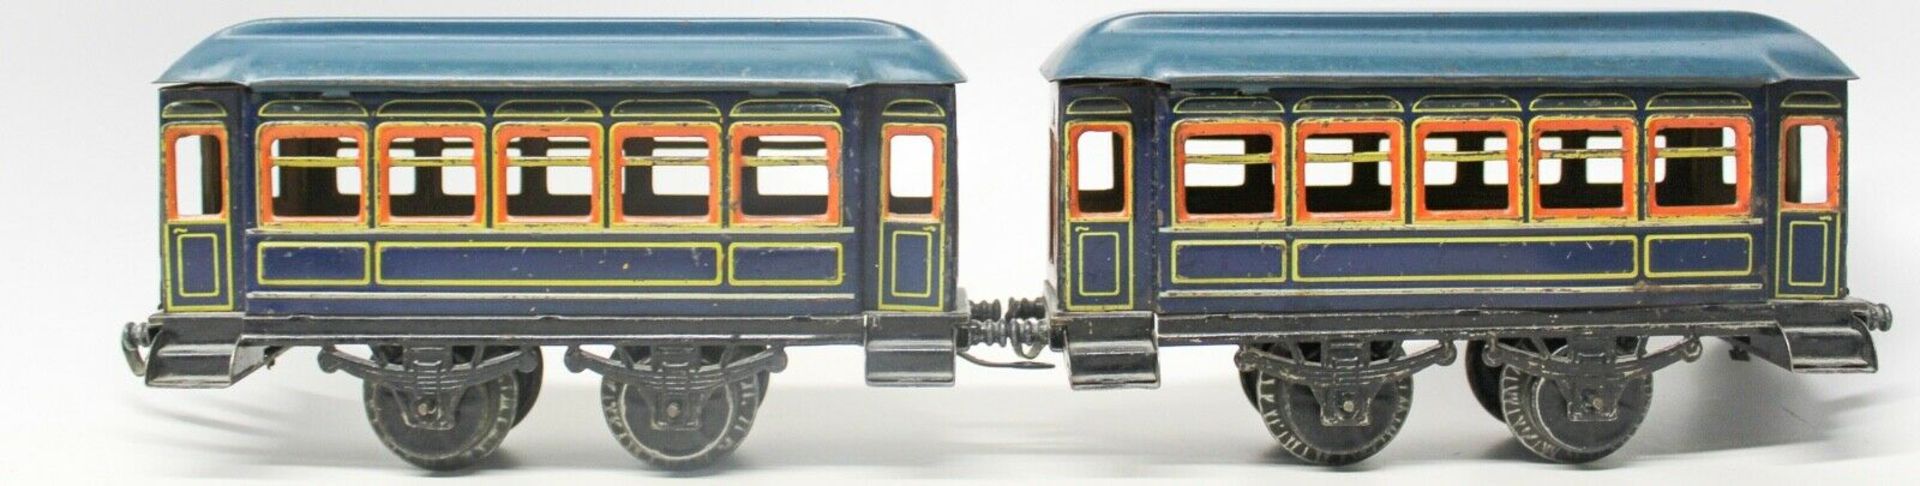 Karl Bub (KBN) Clockwork 0-Gauge Locomotive Vintage Large Passenger Train Set Tin Lithograp Large - Image 5 of 5